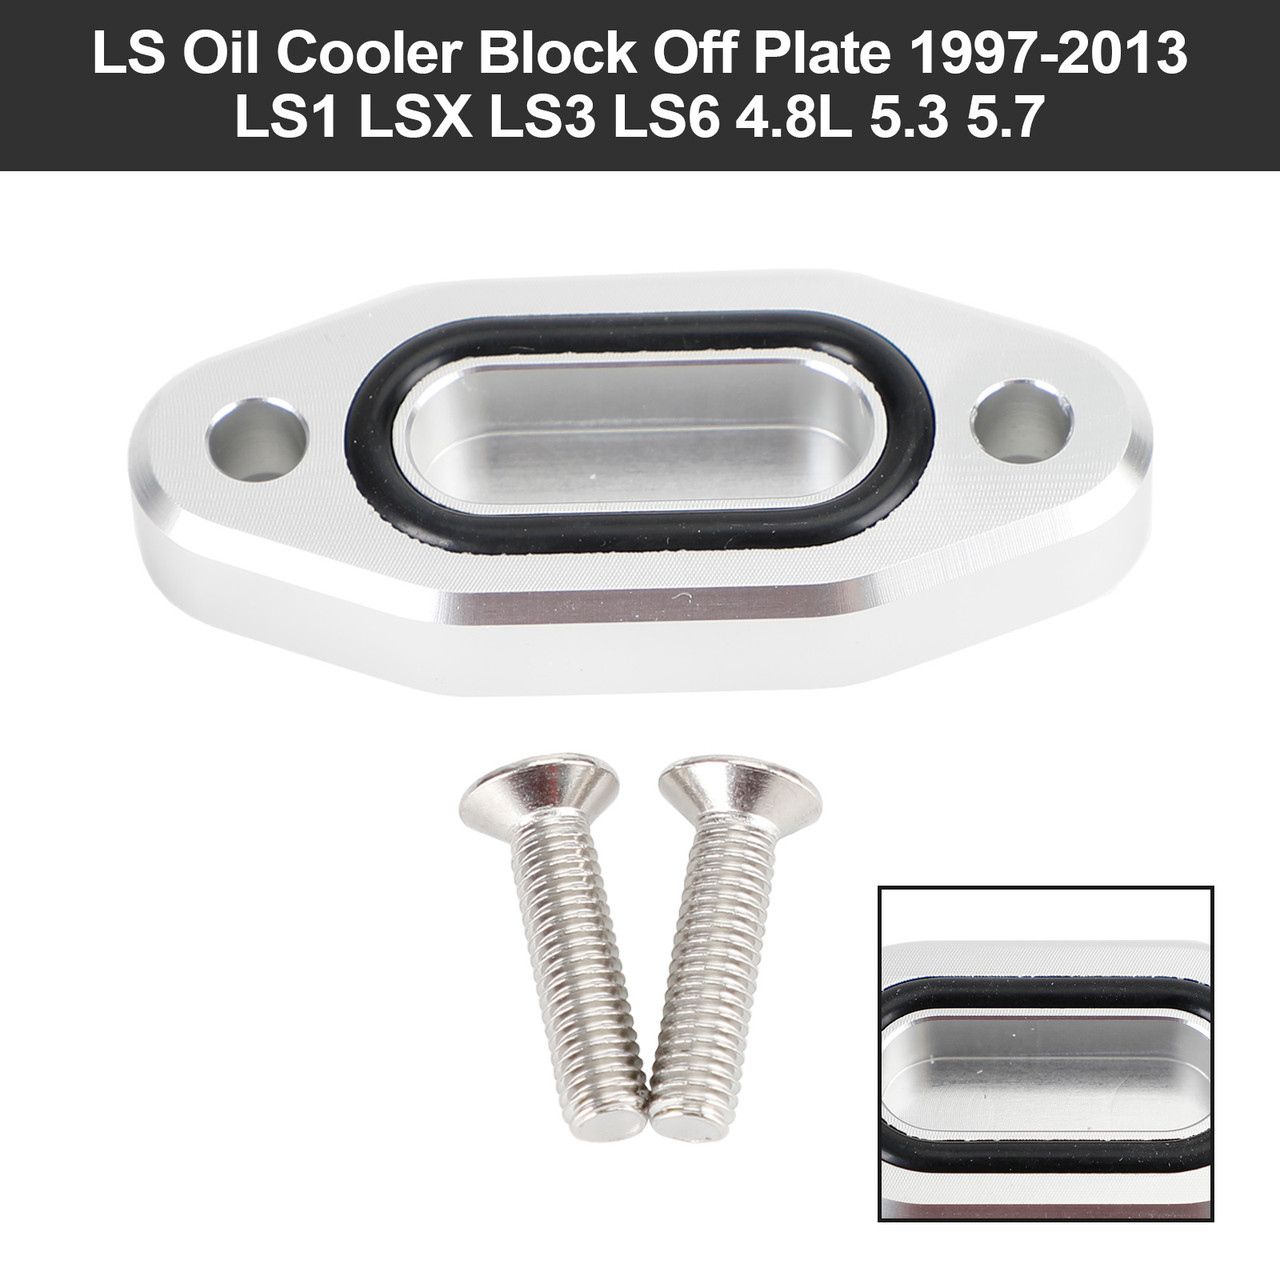 LS Oil Cooler Block Off Plate 1997-2013 LS1 LSX LS3 LS6 4.8L 5.3 5.7